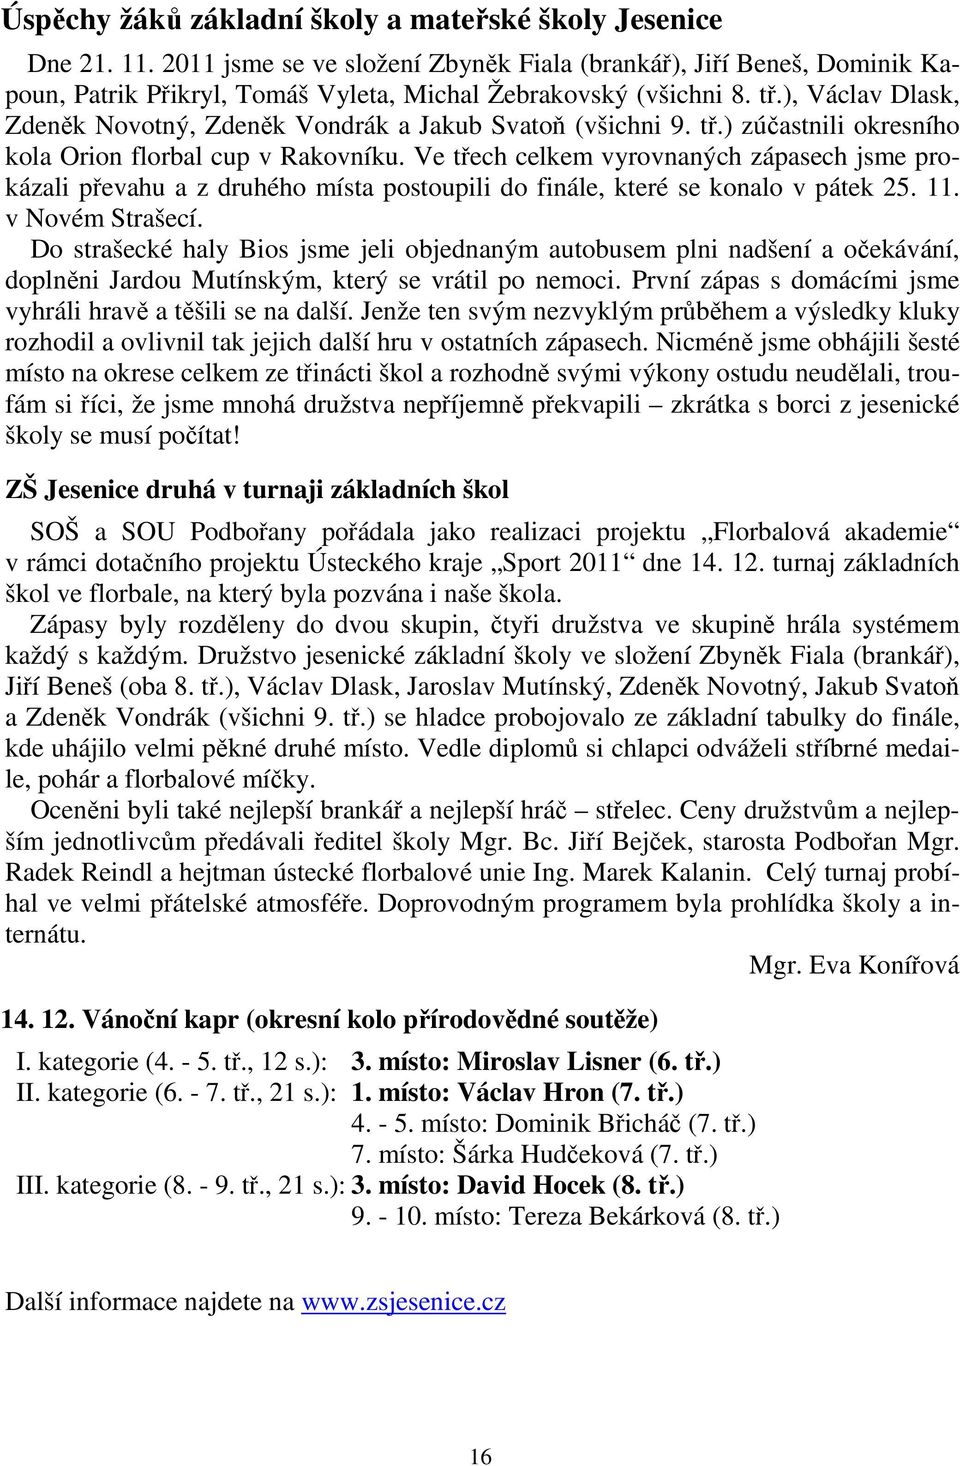 ), Václav Dlask, Zdeněk Novotný, Zdeněk Vondrák a Jakub Svatoň (všichni 9. tř.) zúčastnili okresního kola Orion florbal cup v Rakovníku.